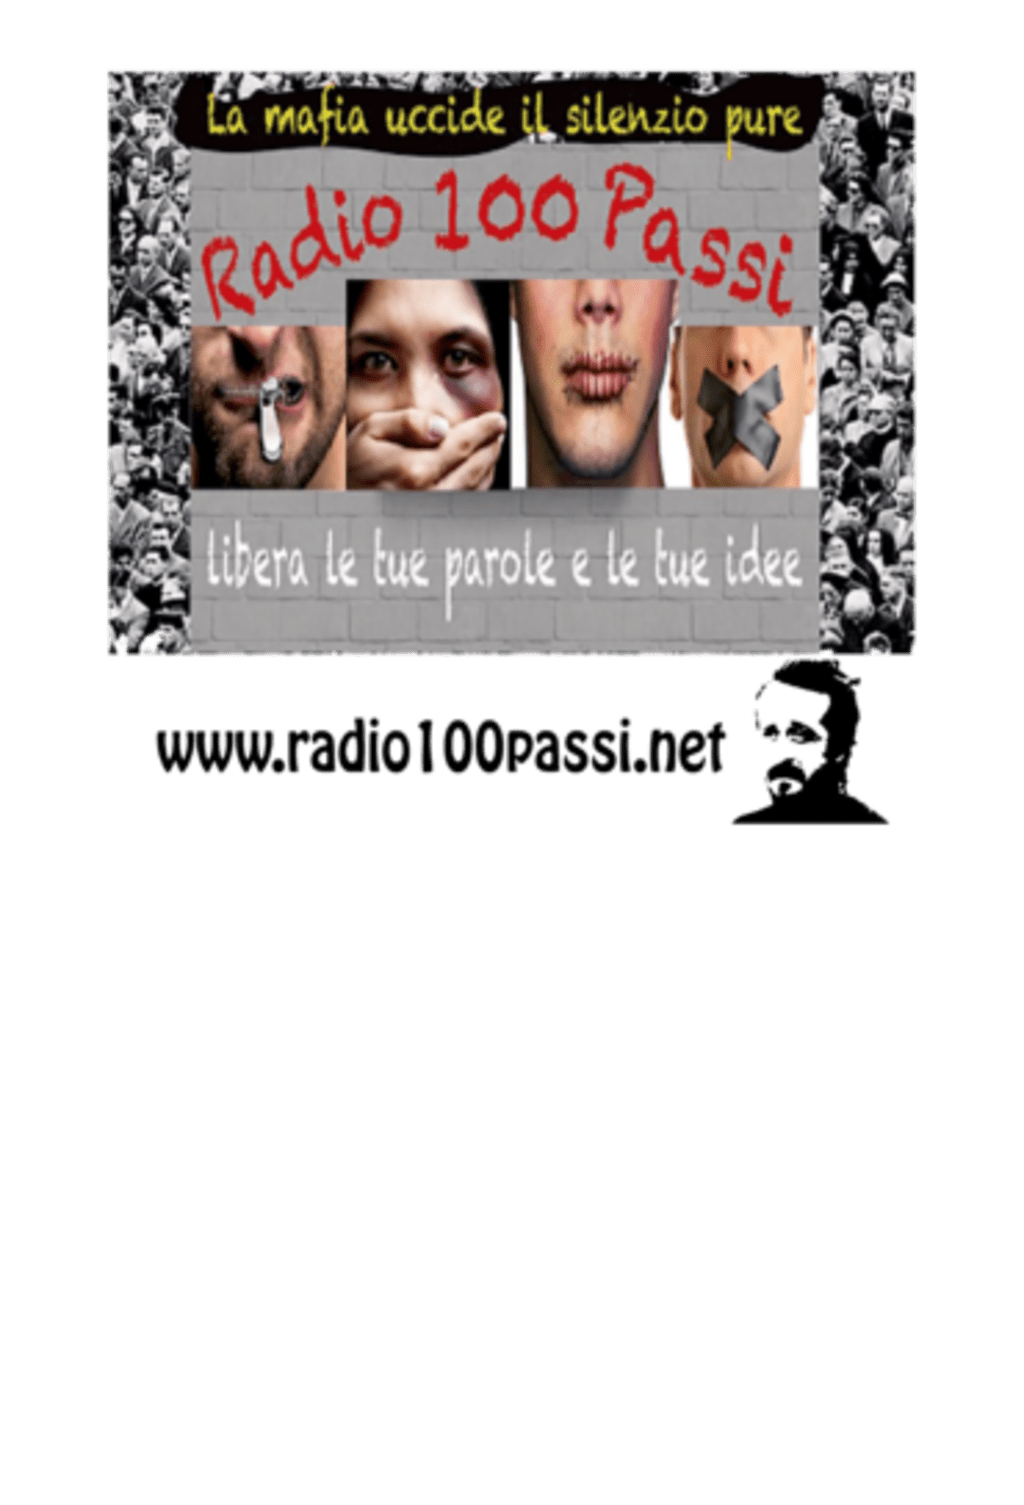 Radio 100 passi player radio